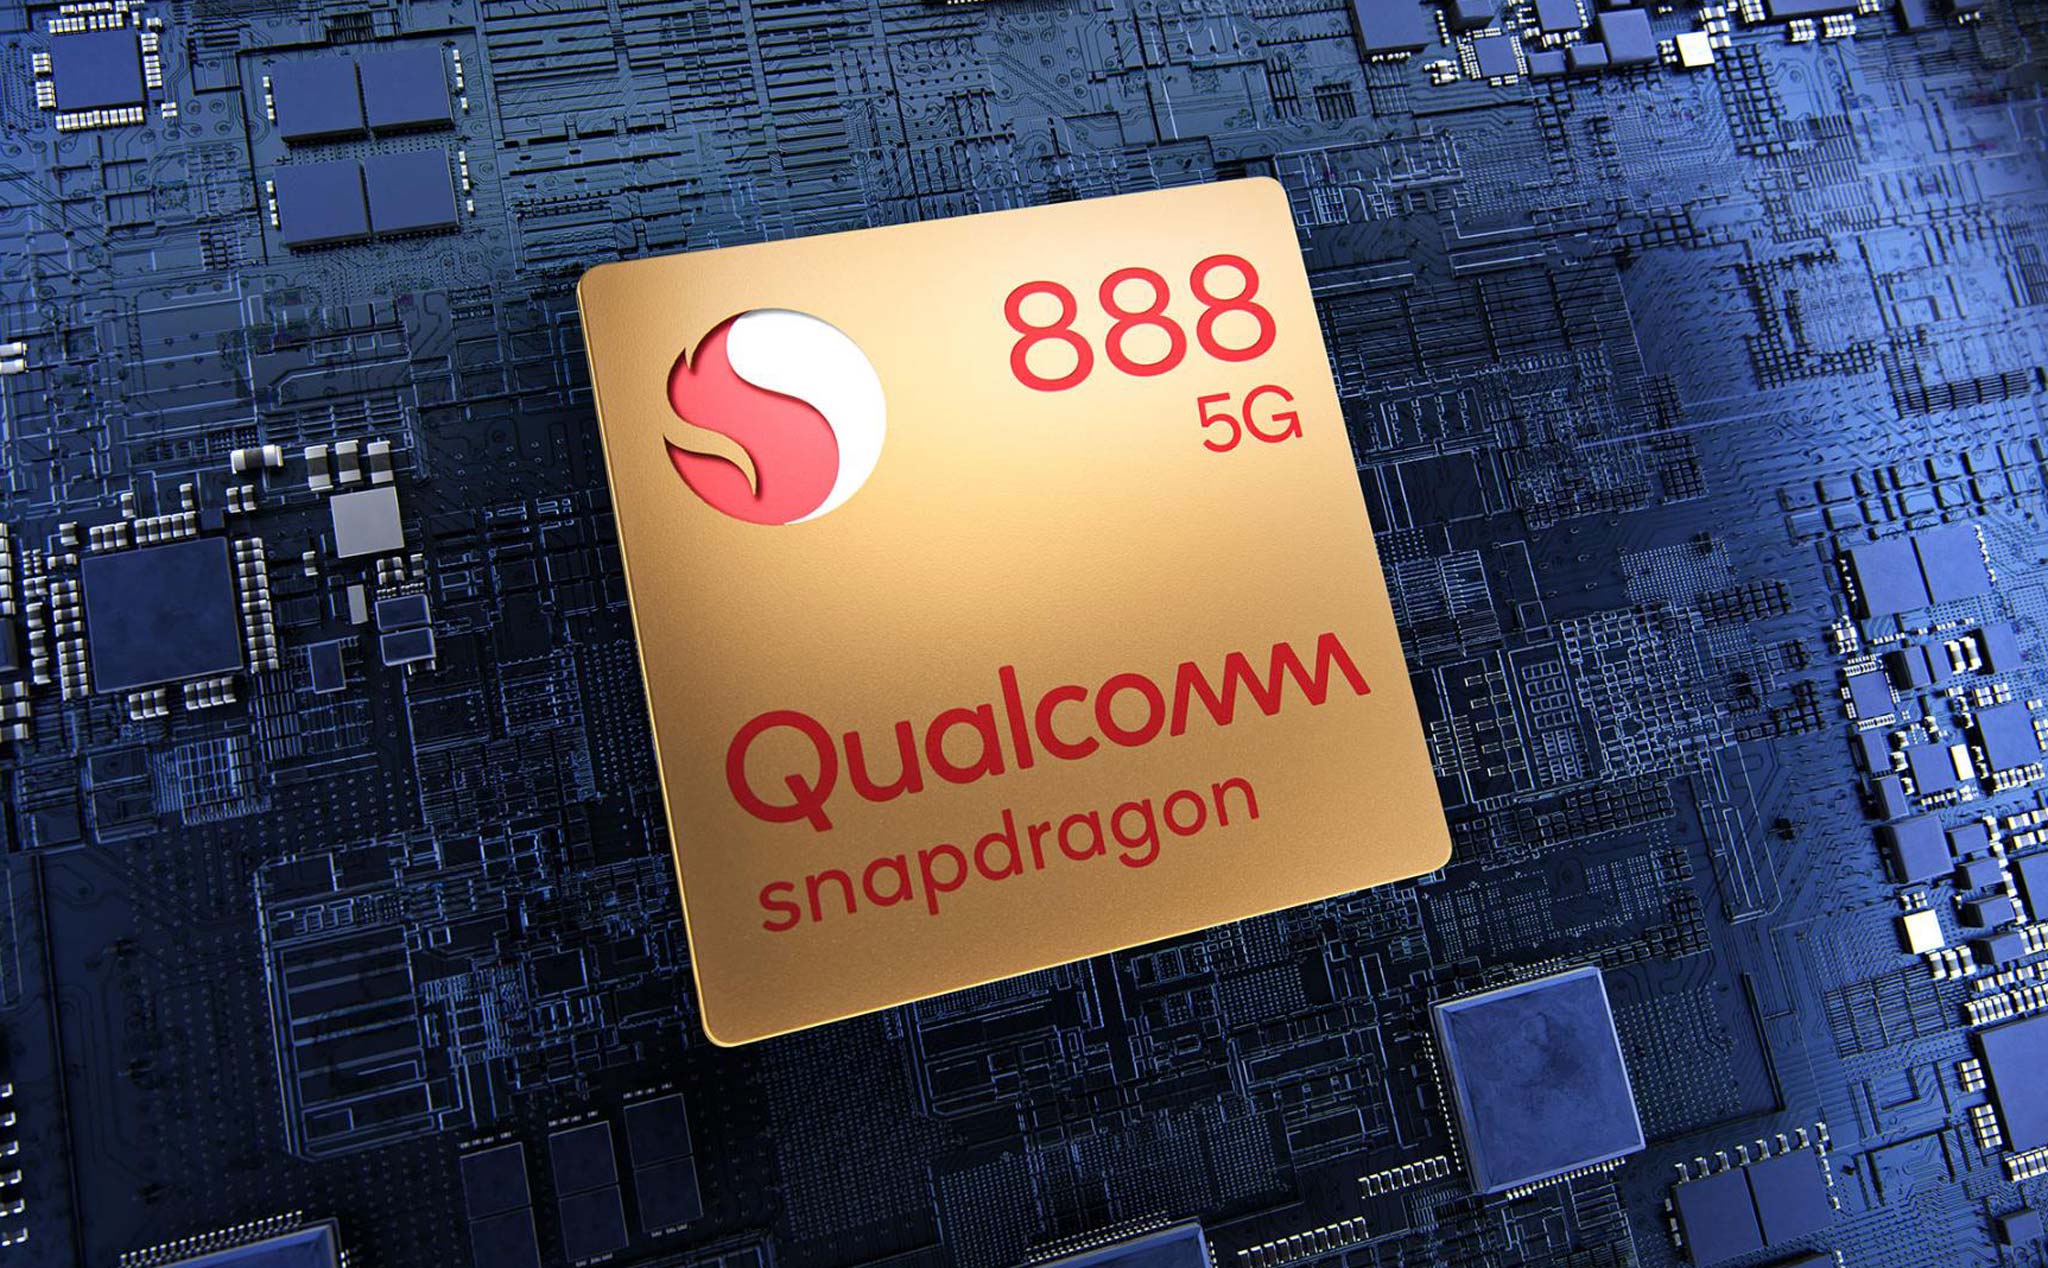 Tại sao tên chipset mới nhất của Qualcomm là Snapdragon 888 thay vì 875?